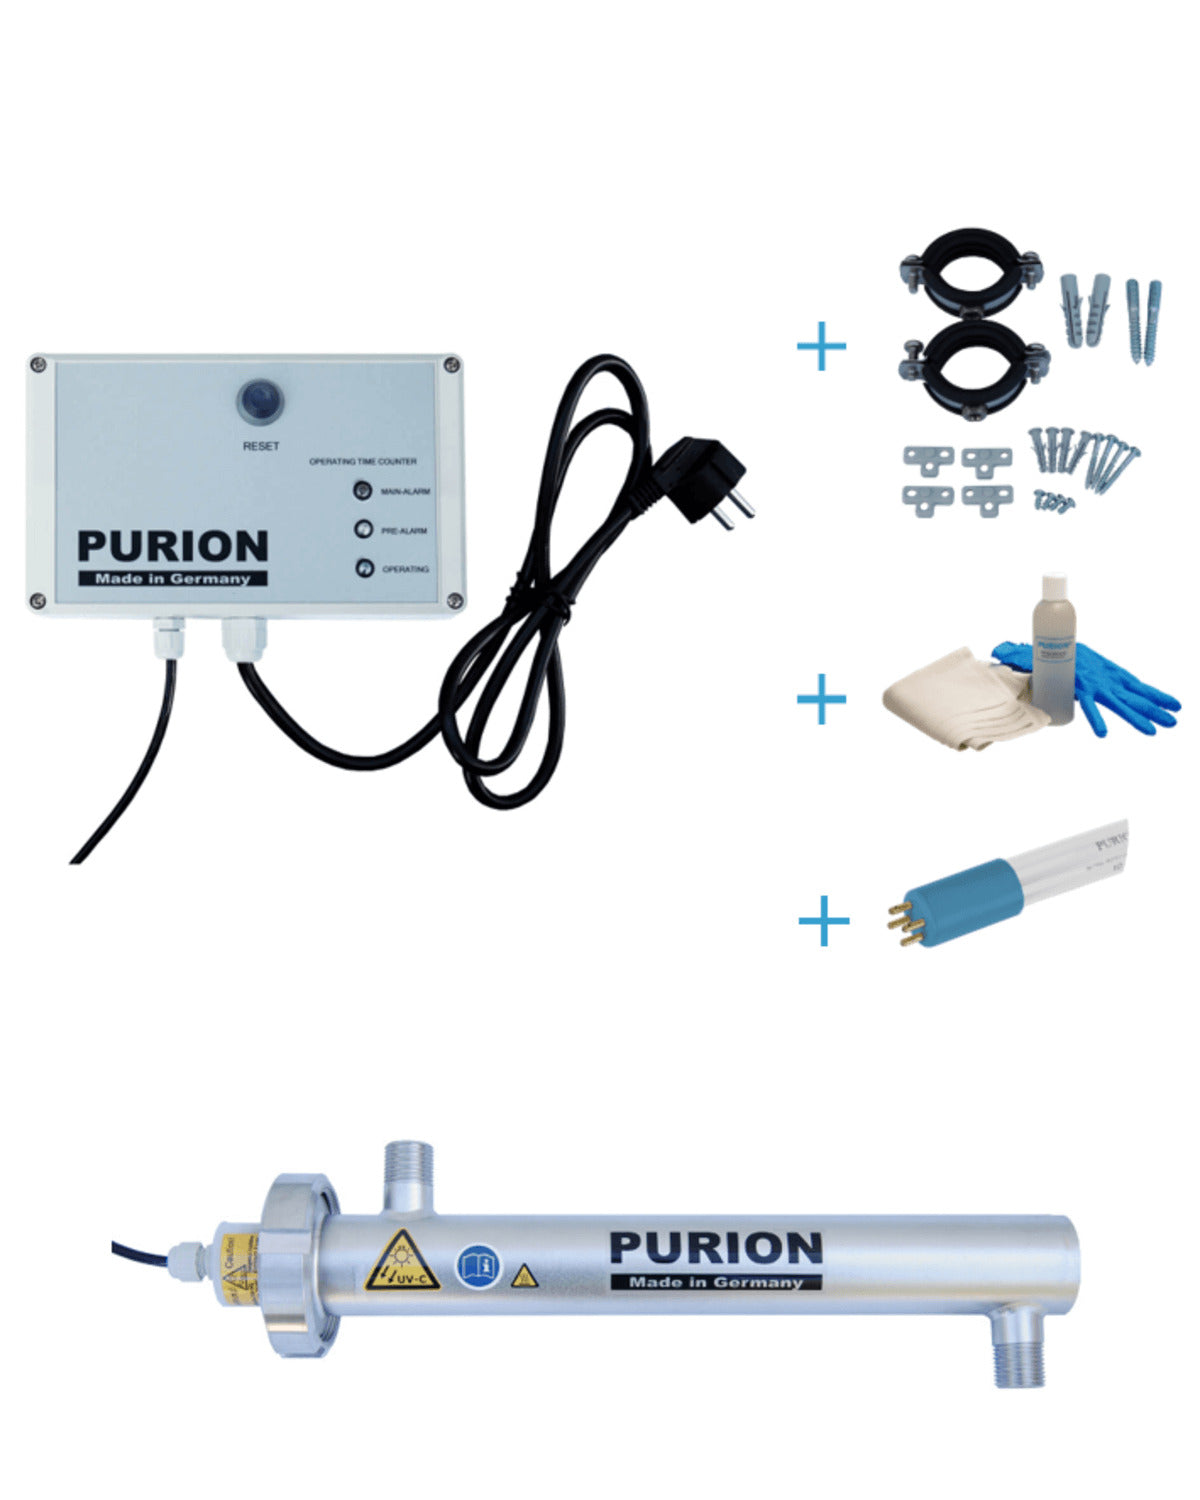 Das PURION 500 OTC Bundle ist ein autarkes Lebenssystem zur Desinfektionsanlage und Trinkwasseraufbereitung, hergestellt von der PURION GmbH.